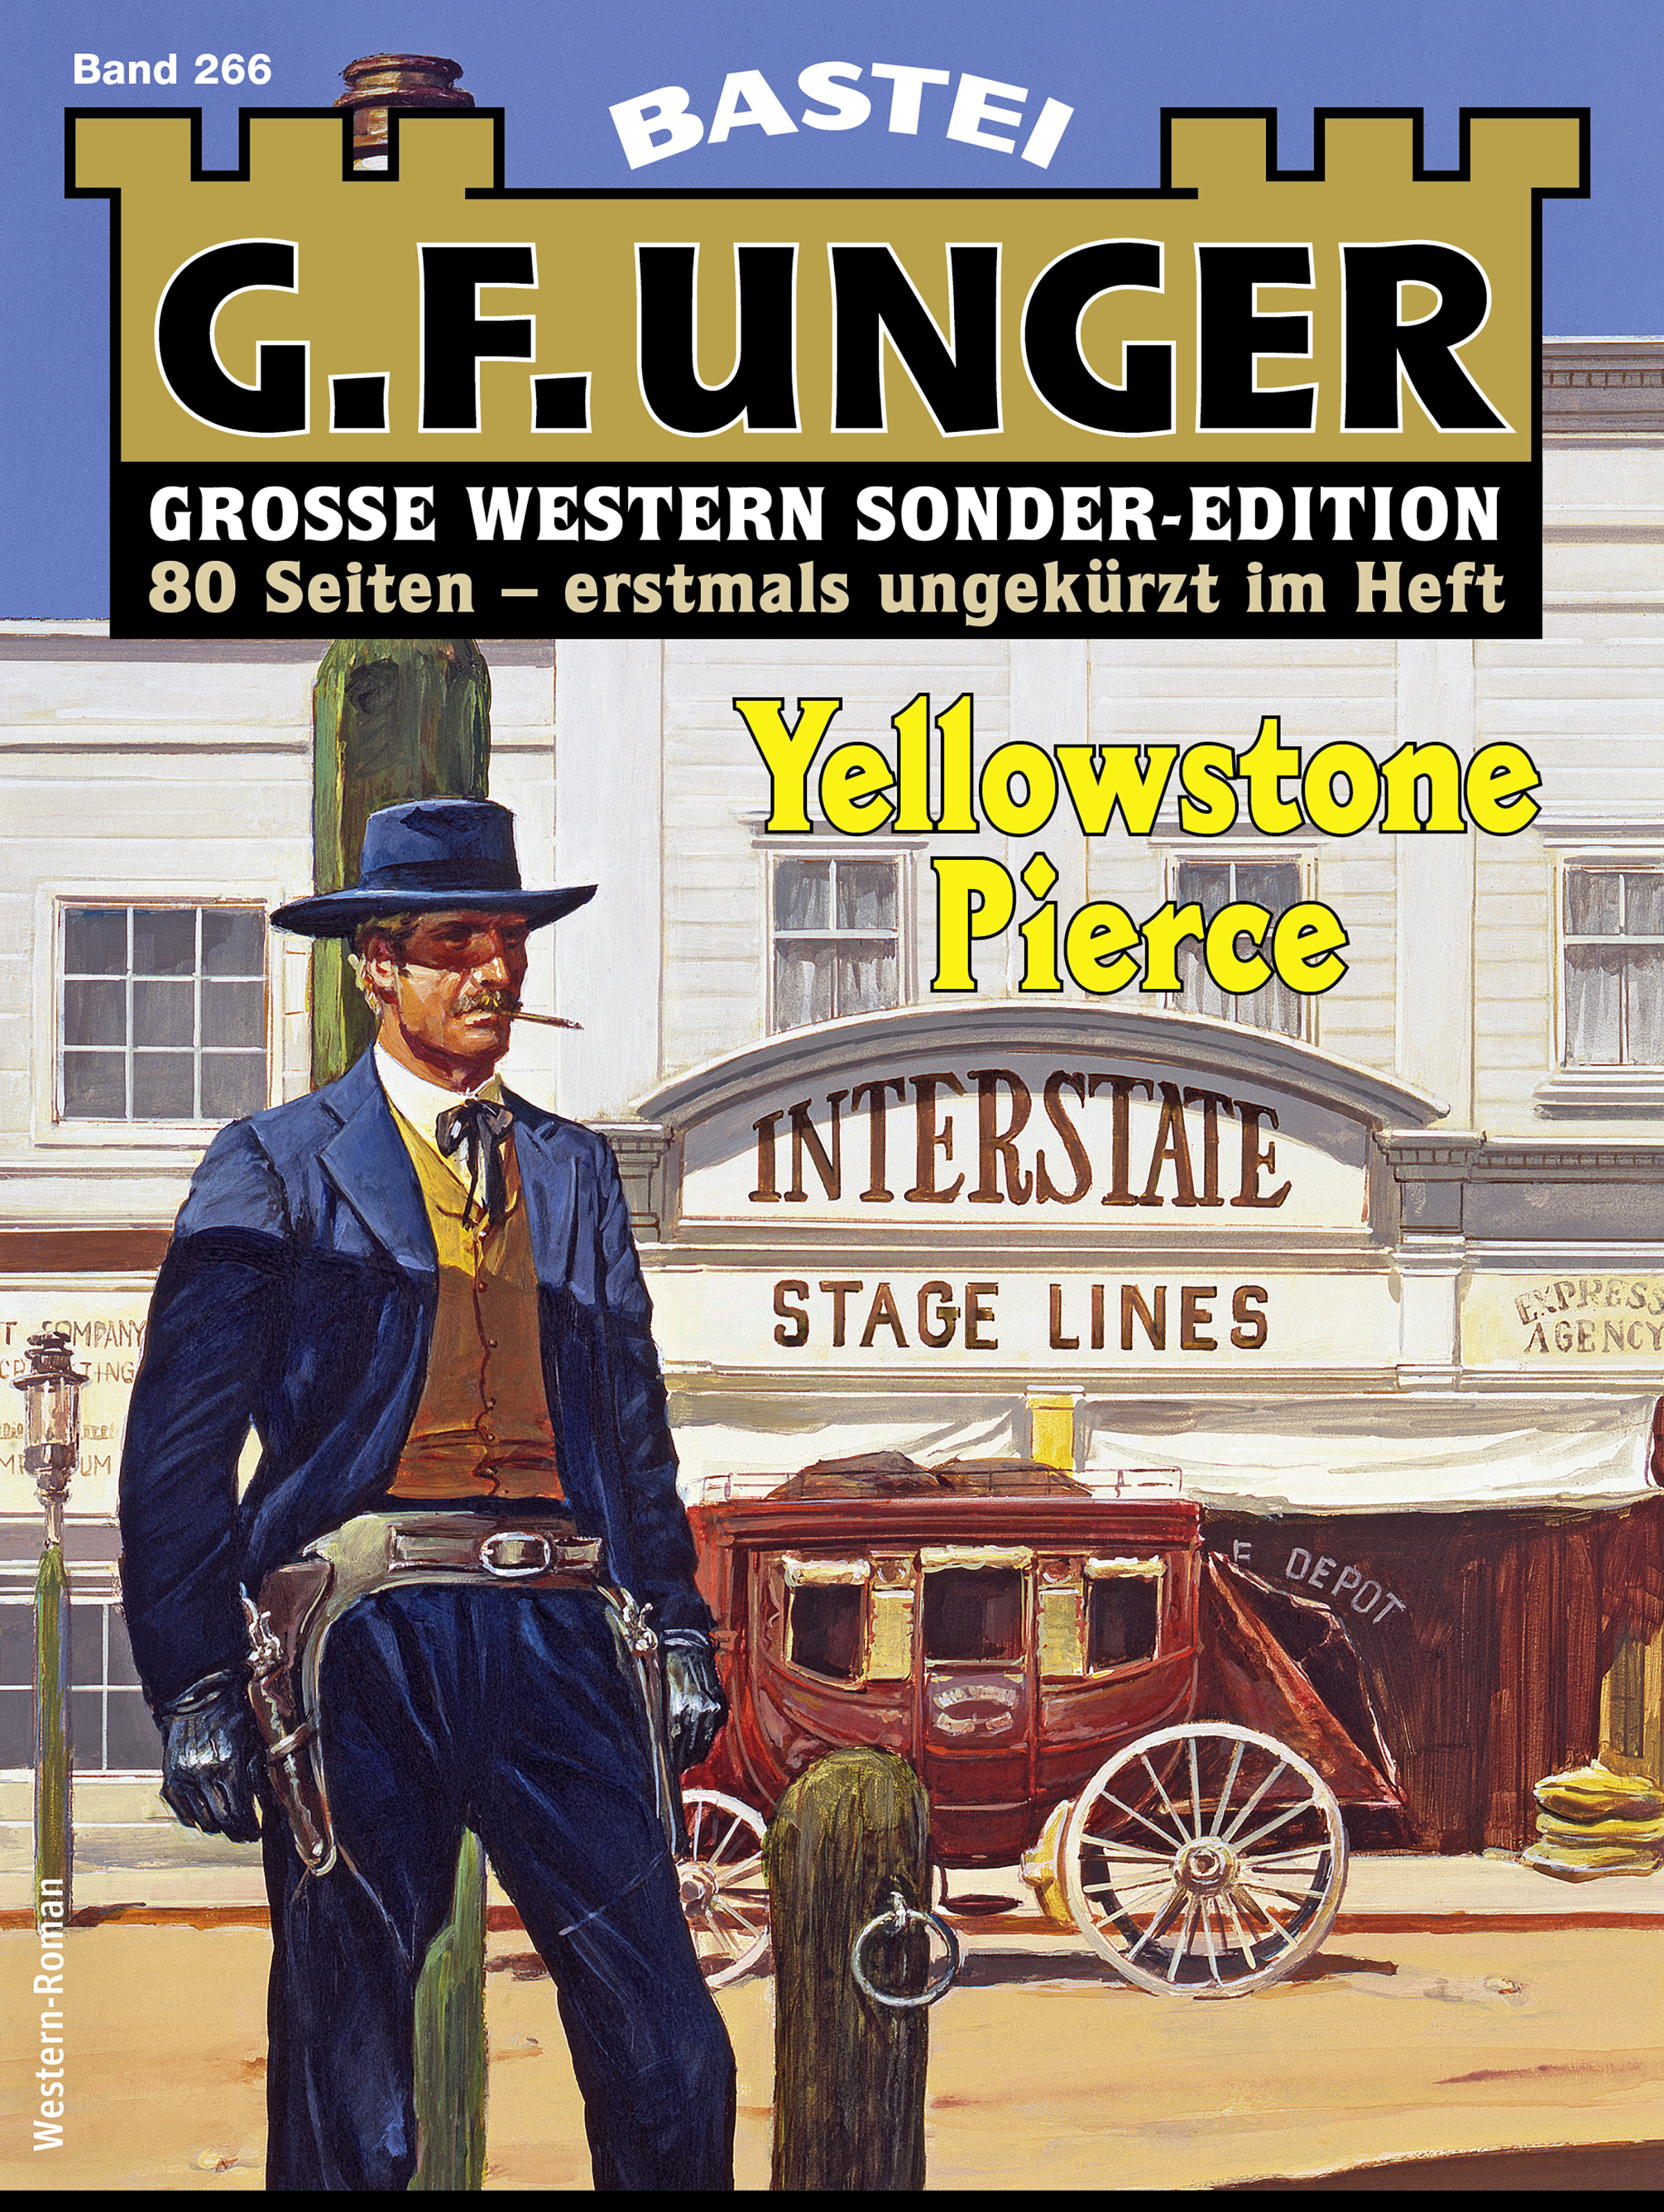 G. F. Unger Sonder-Edition 266